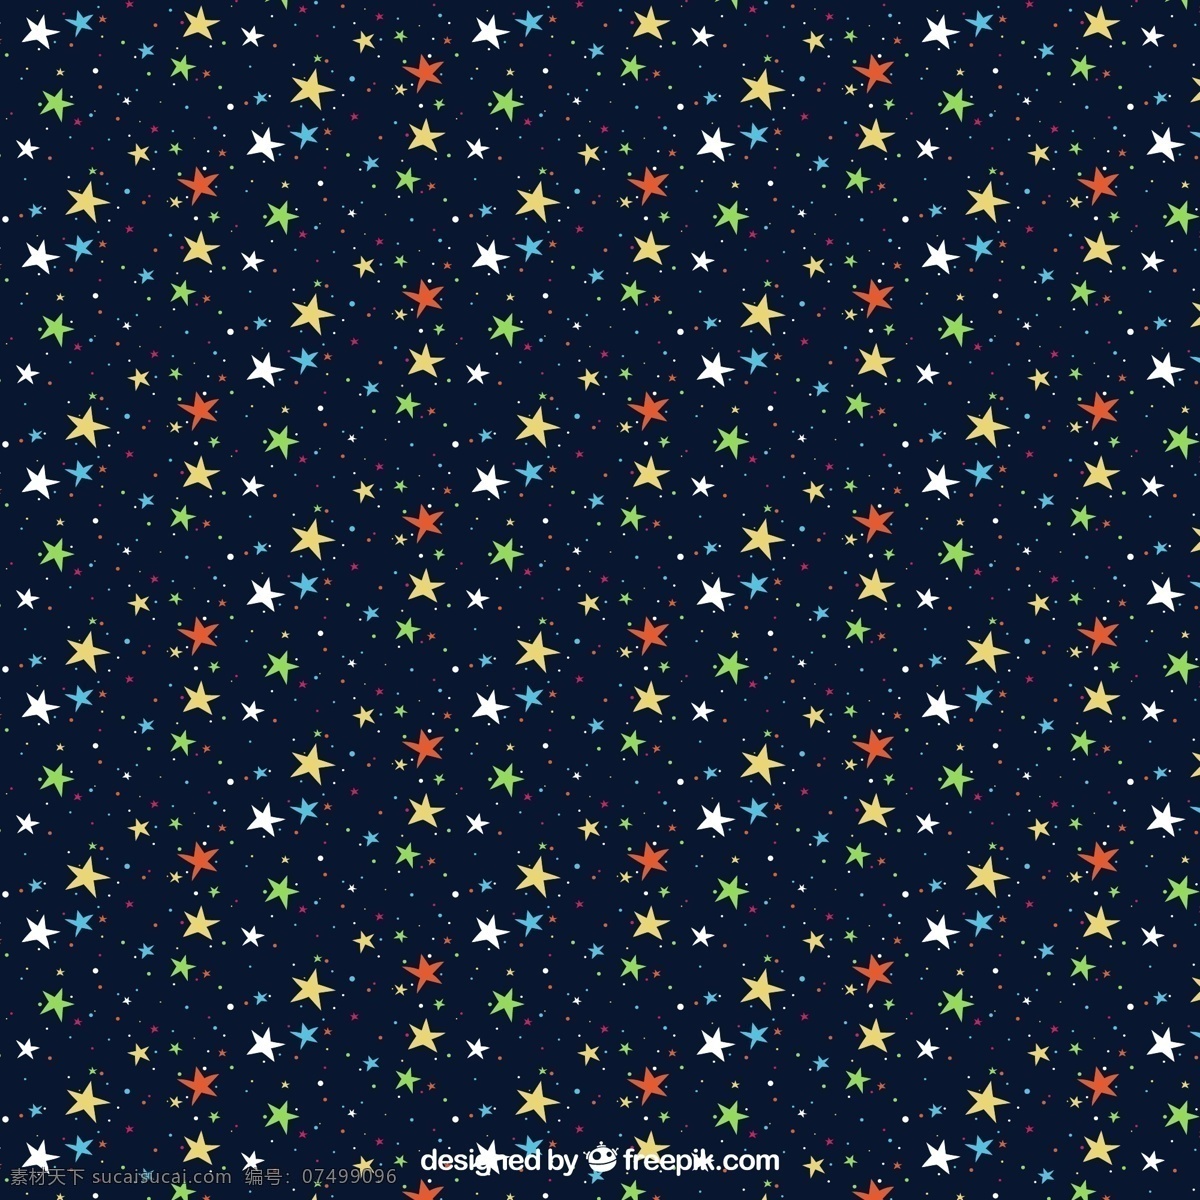 星星 无缝 背景图片 彩色 无缝背景 矢量图 格式 矢量 高清图片